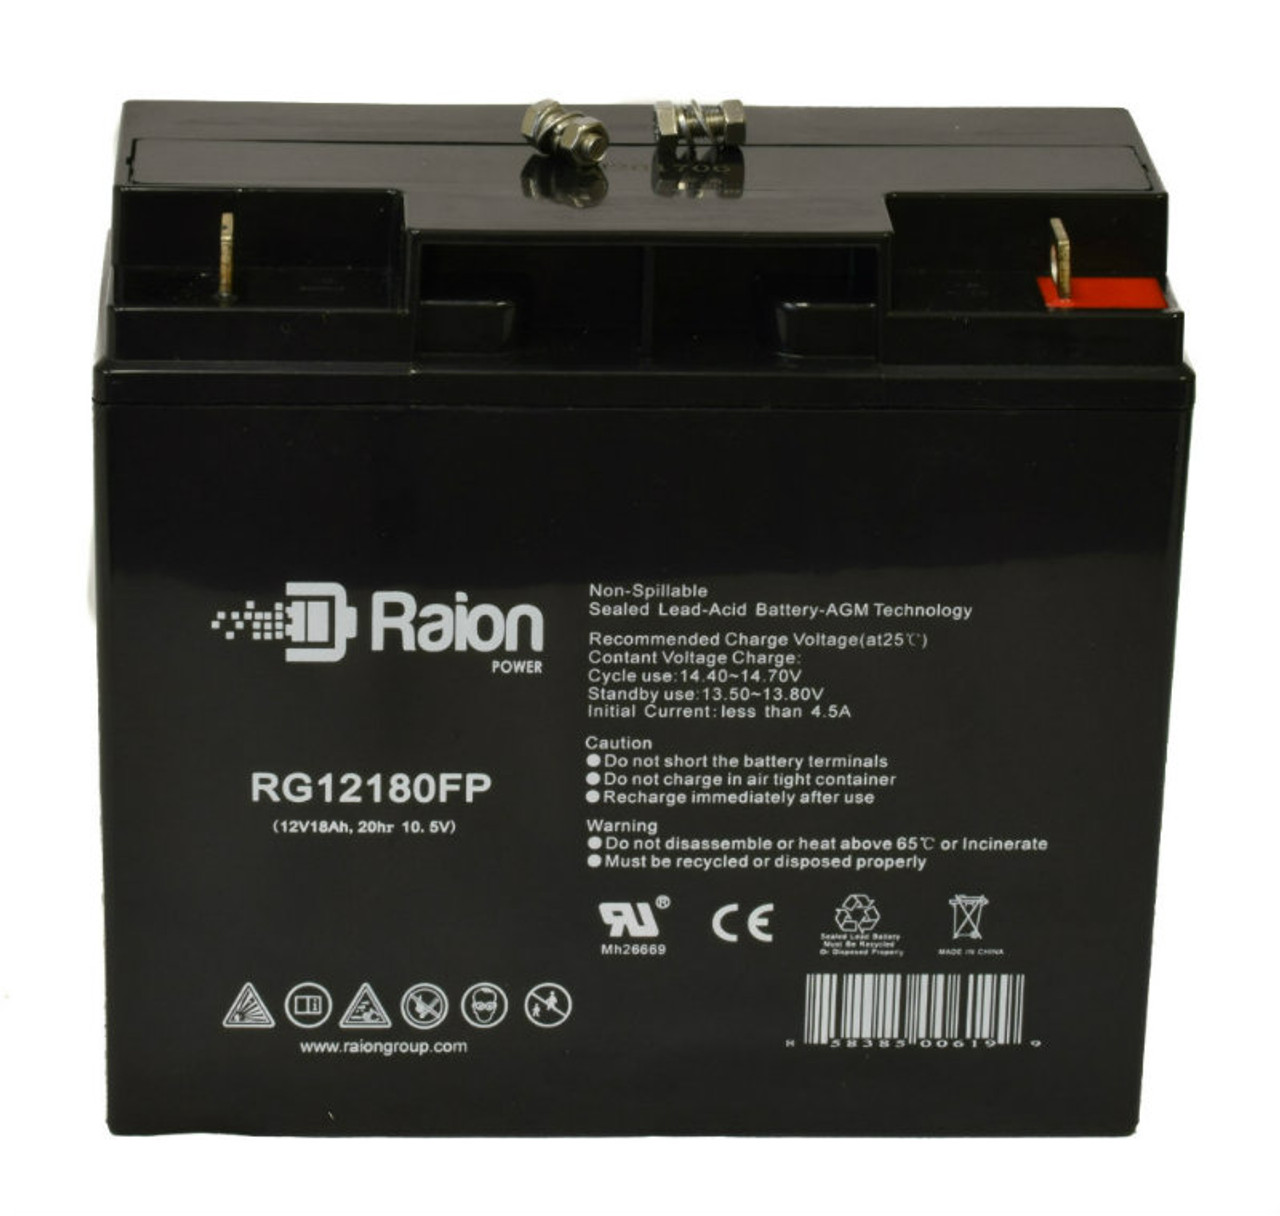 Raion Power RG12180FP 12V 18Ah Lead Acid Battery for Volt Canada Spyder